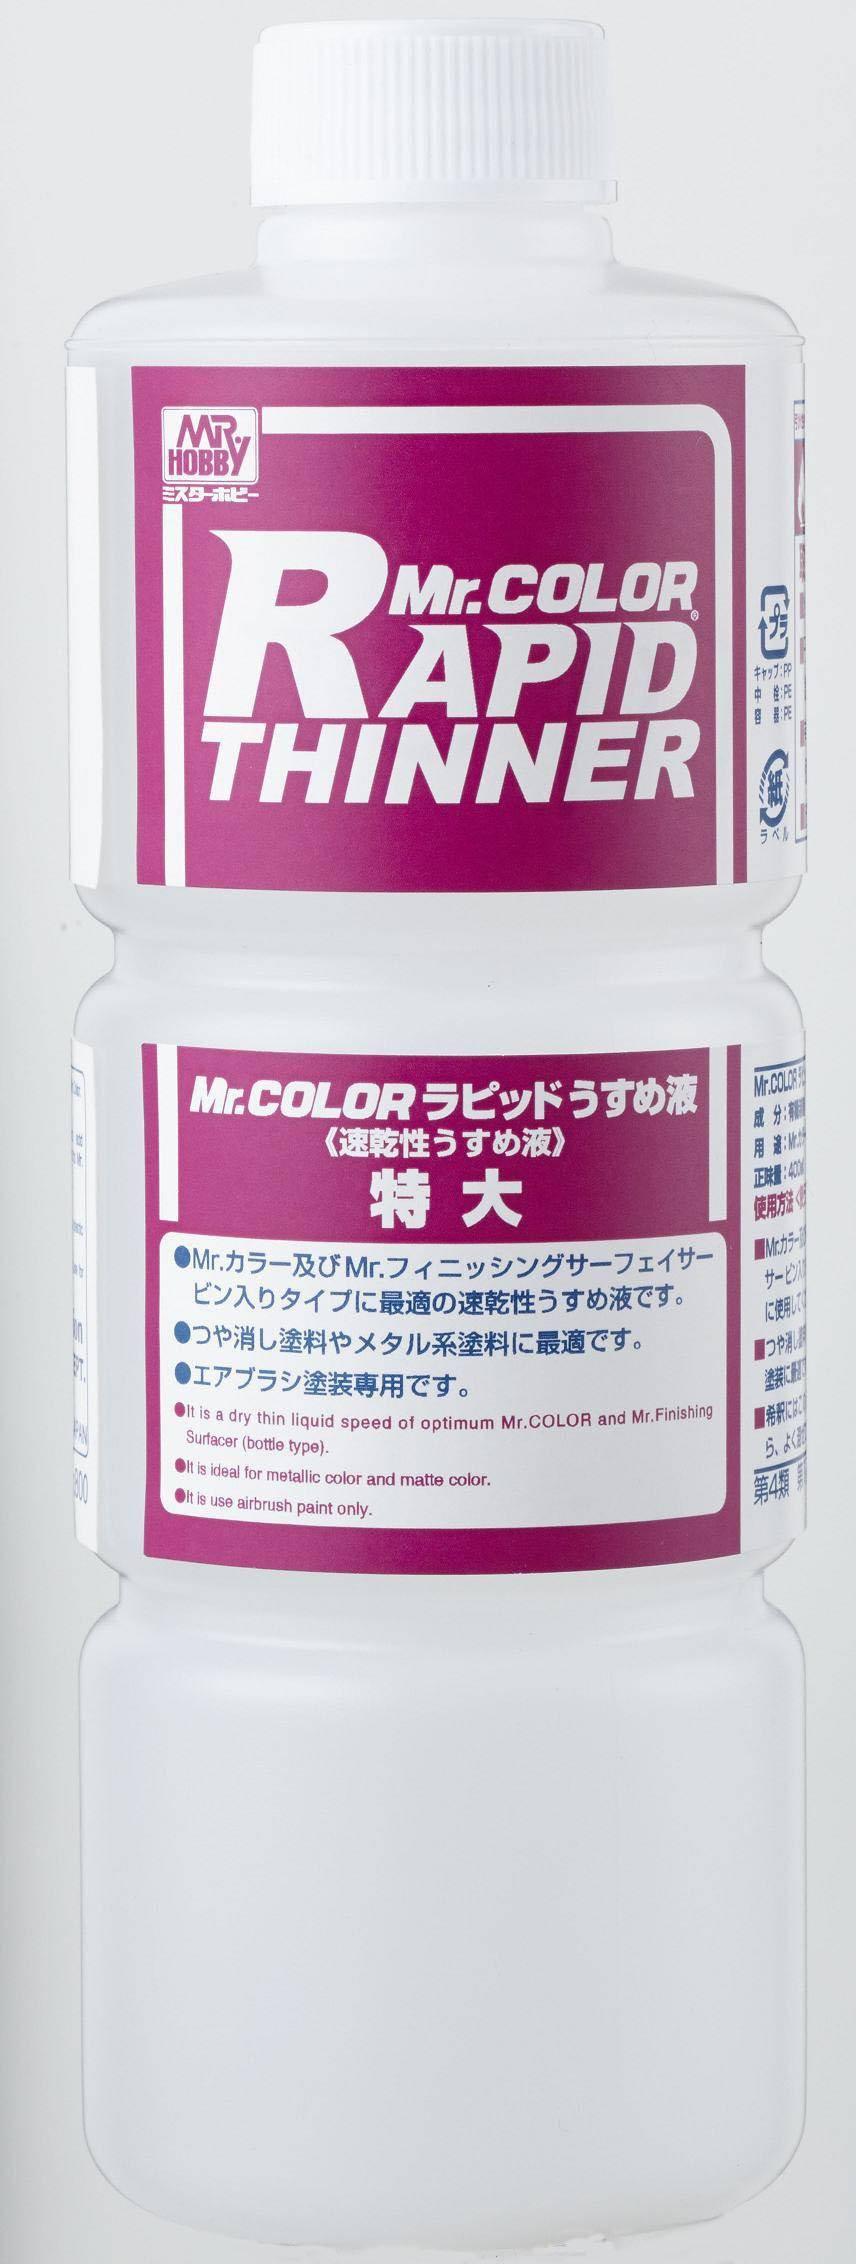 Mr.Rapid Thinner - Gundam Extra-Your BEST Gunpla Supplier